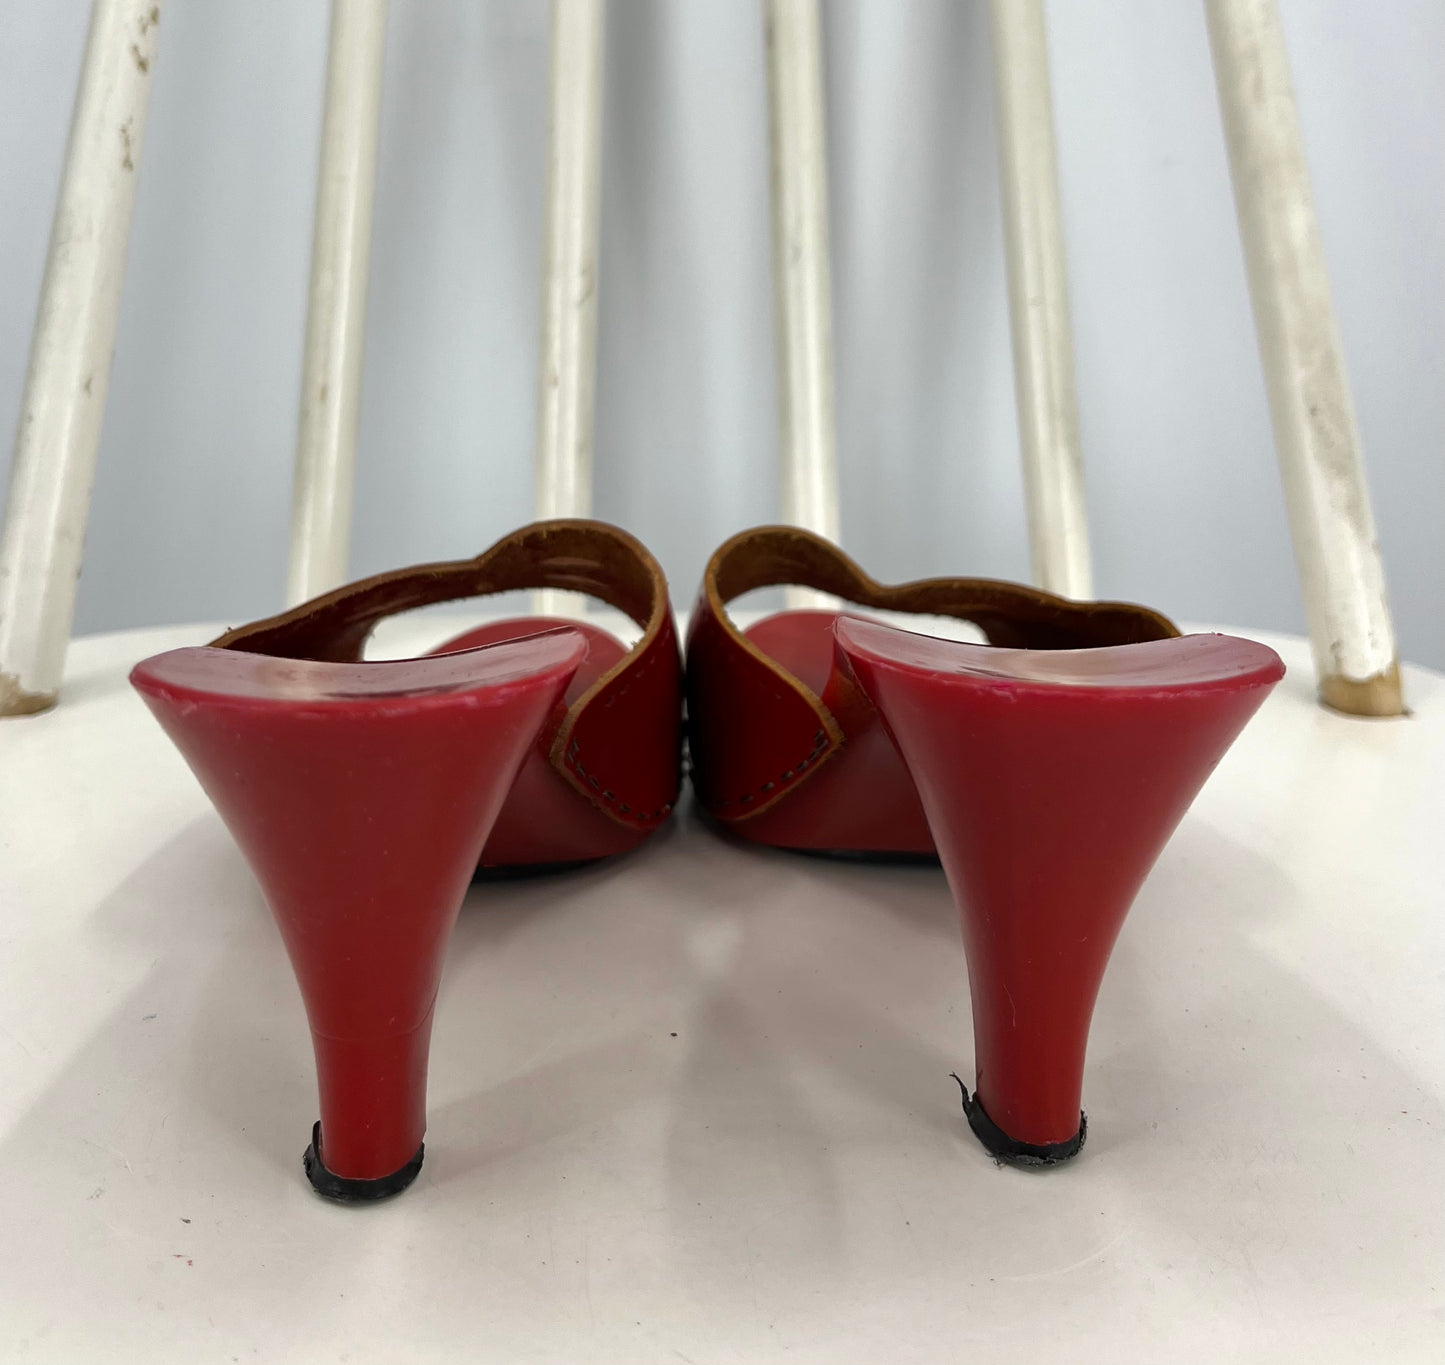 Punaiset korolliset sandaalit, 80-luku, kokoarvio 39